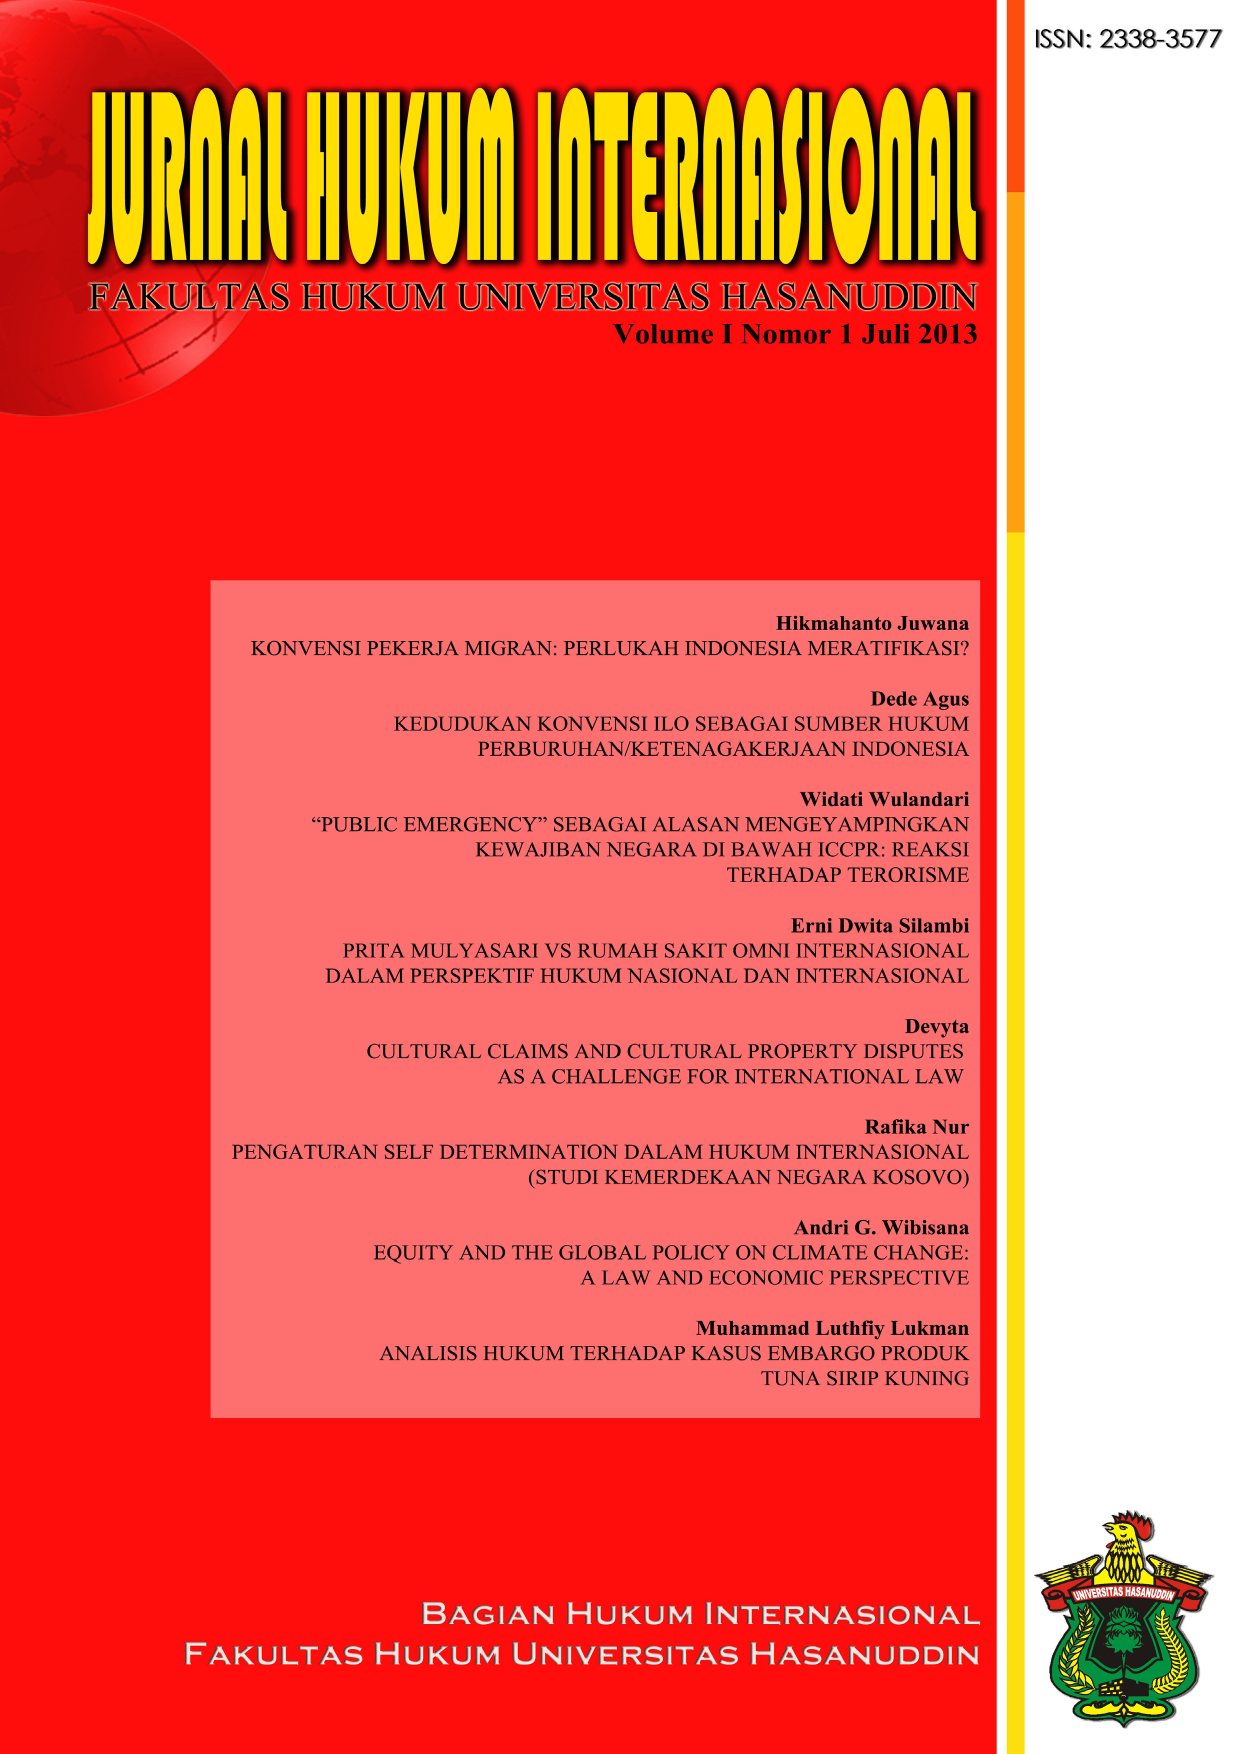 Jurnal Hukum Internasional Vol I No 1 Juli 2013 JURNAL HUKUM INTERNASIONAL FAKULTAS HUKUM UNIVERSITAS HASANUDDIN Diterbitkan oleh BAGIAN HUKUM